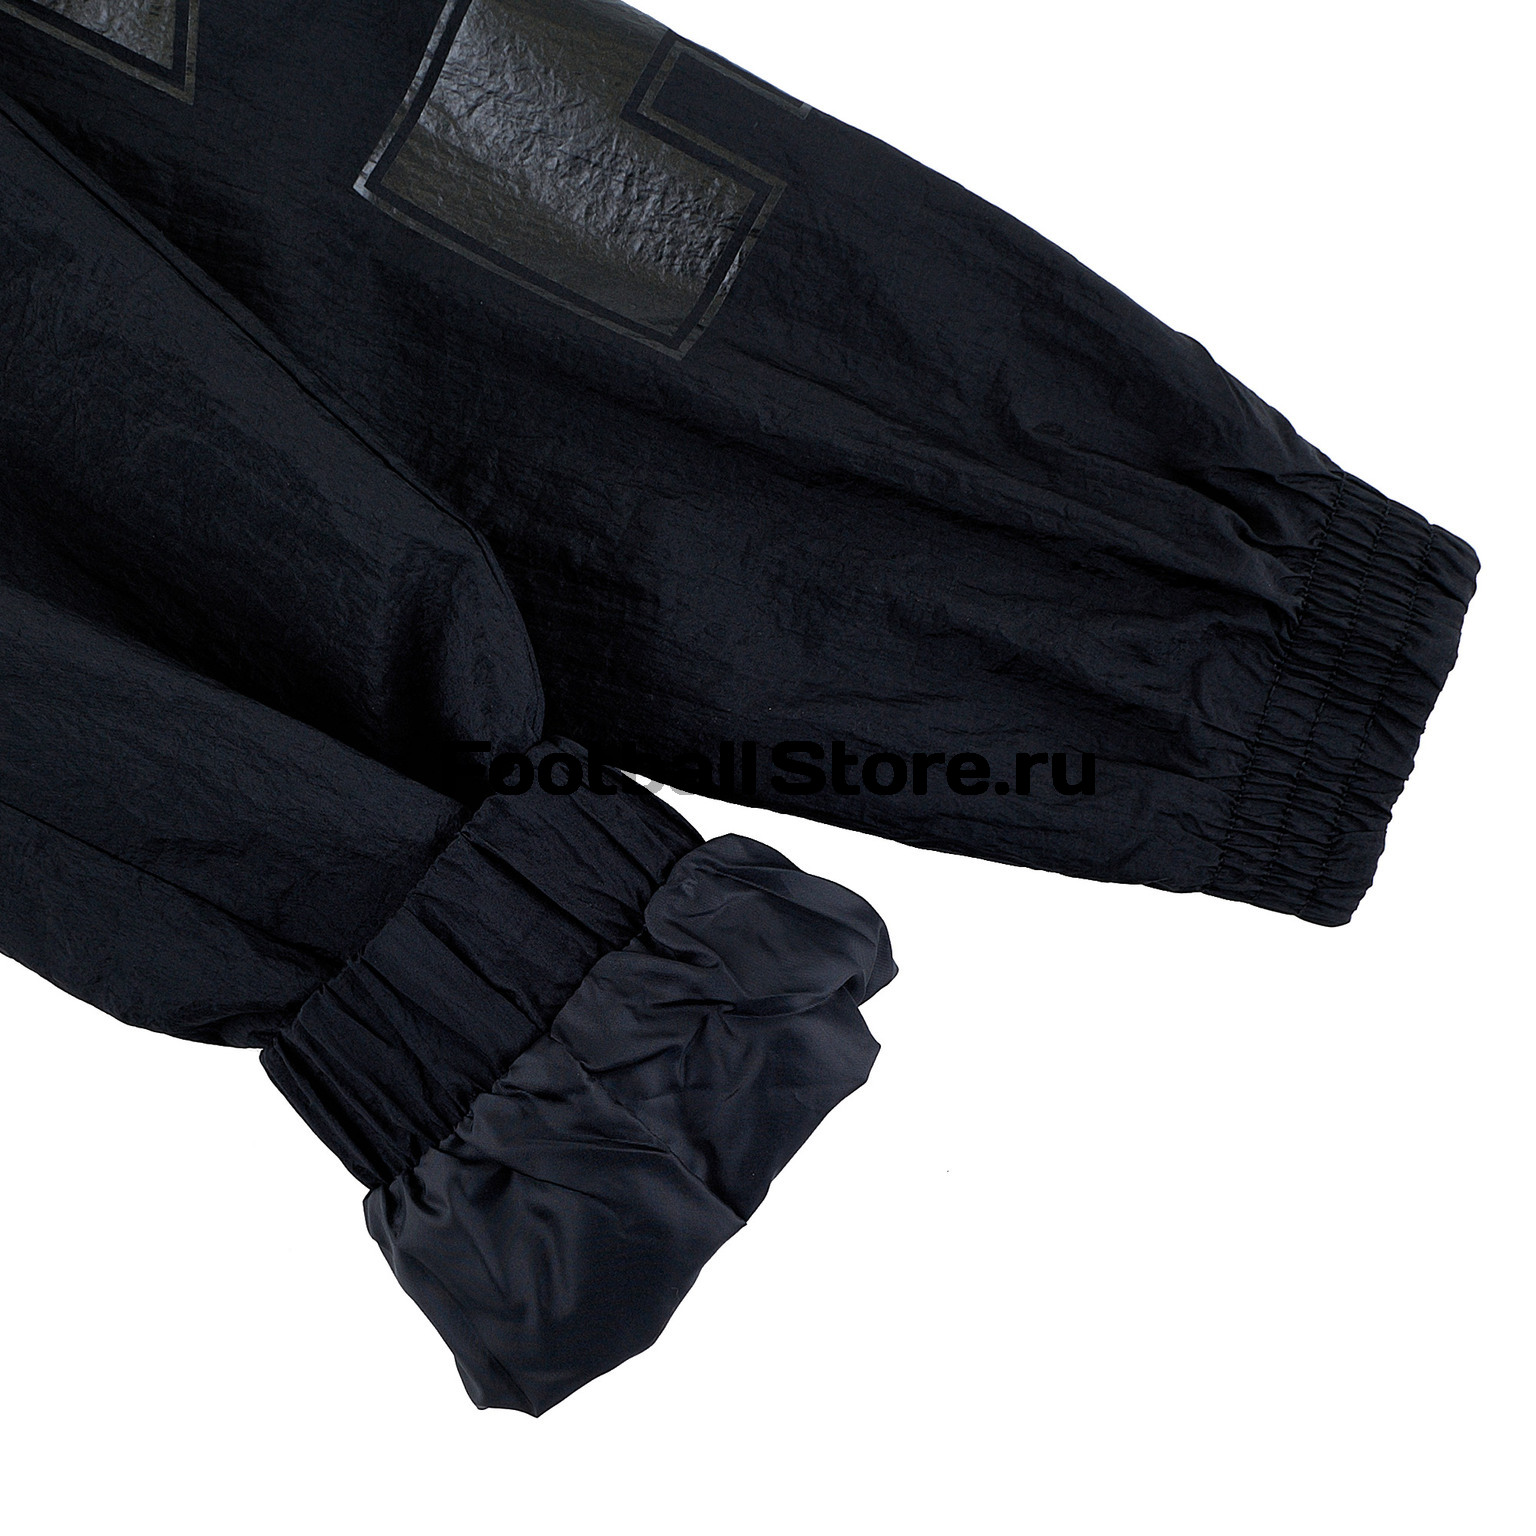 Брюки Nike Woven Pants CT2532-010